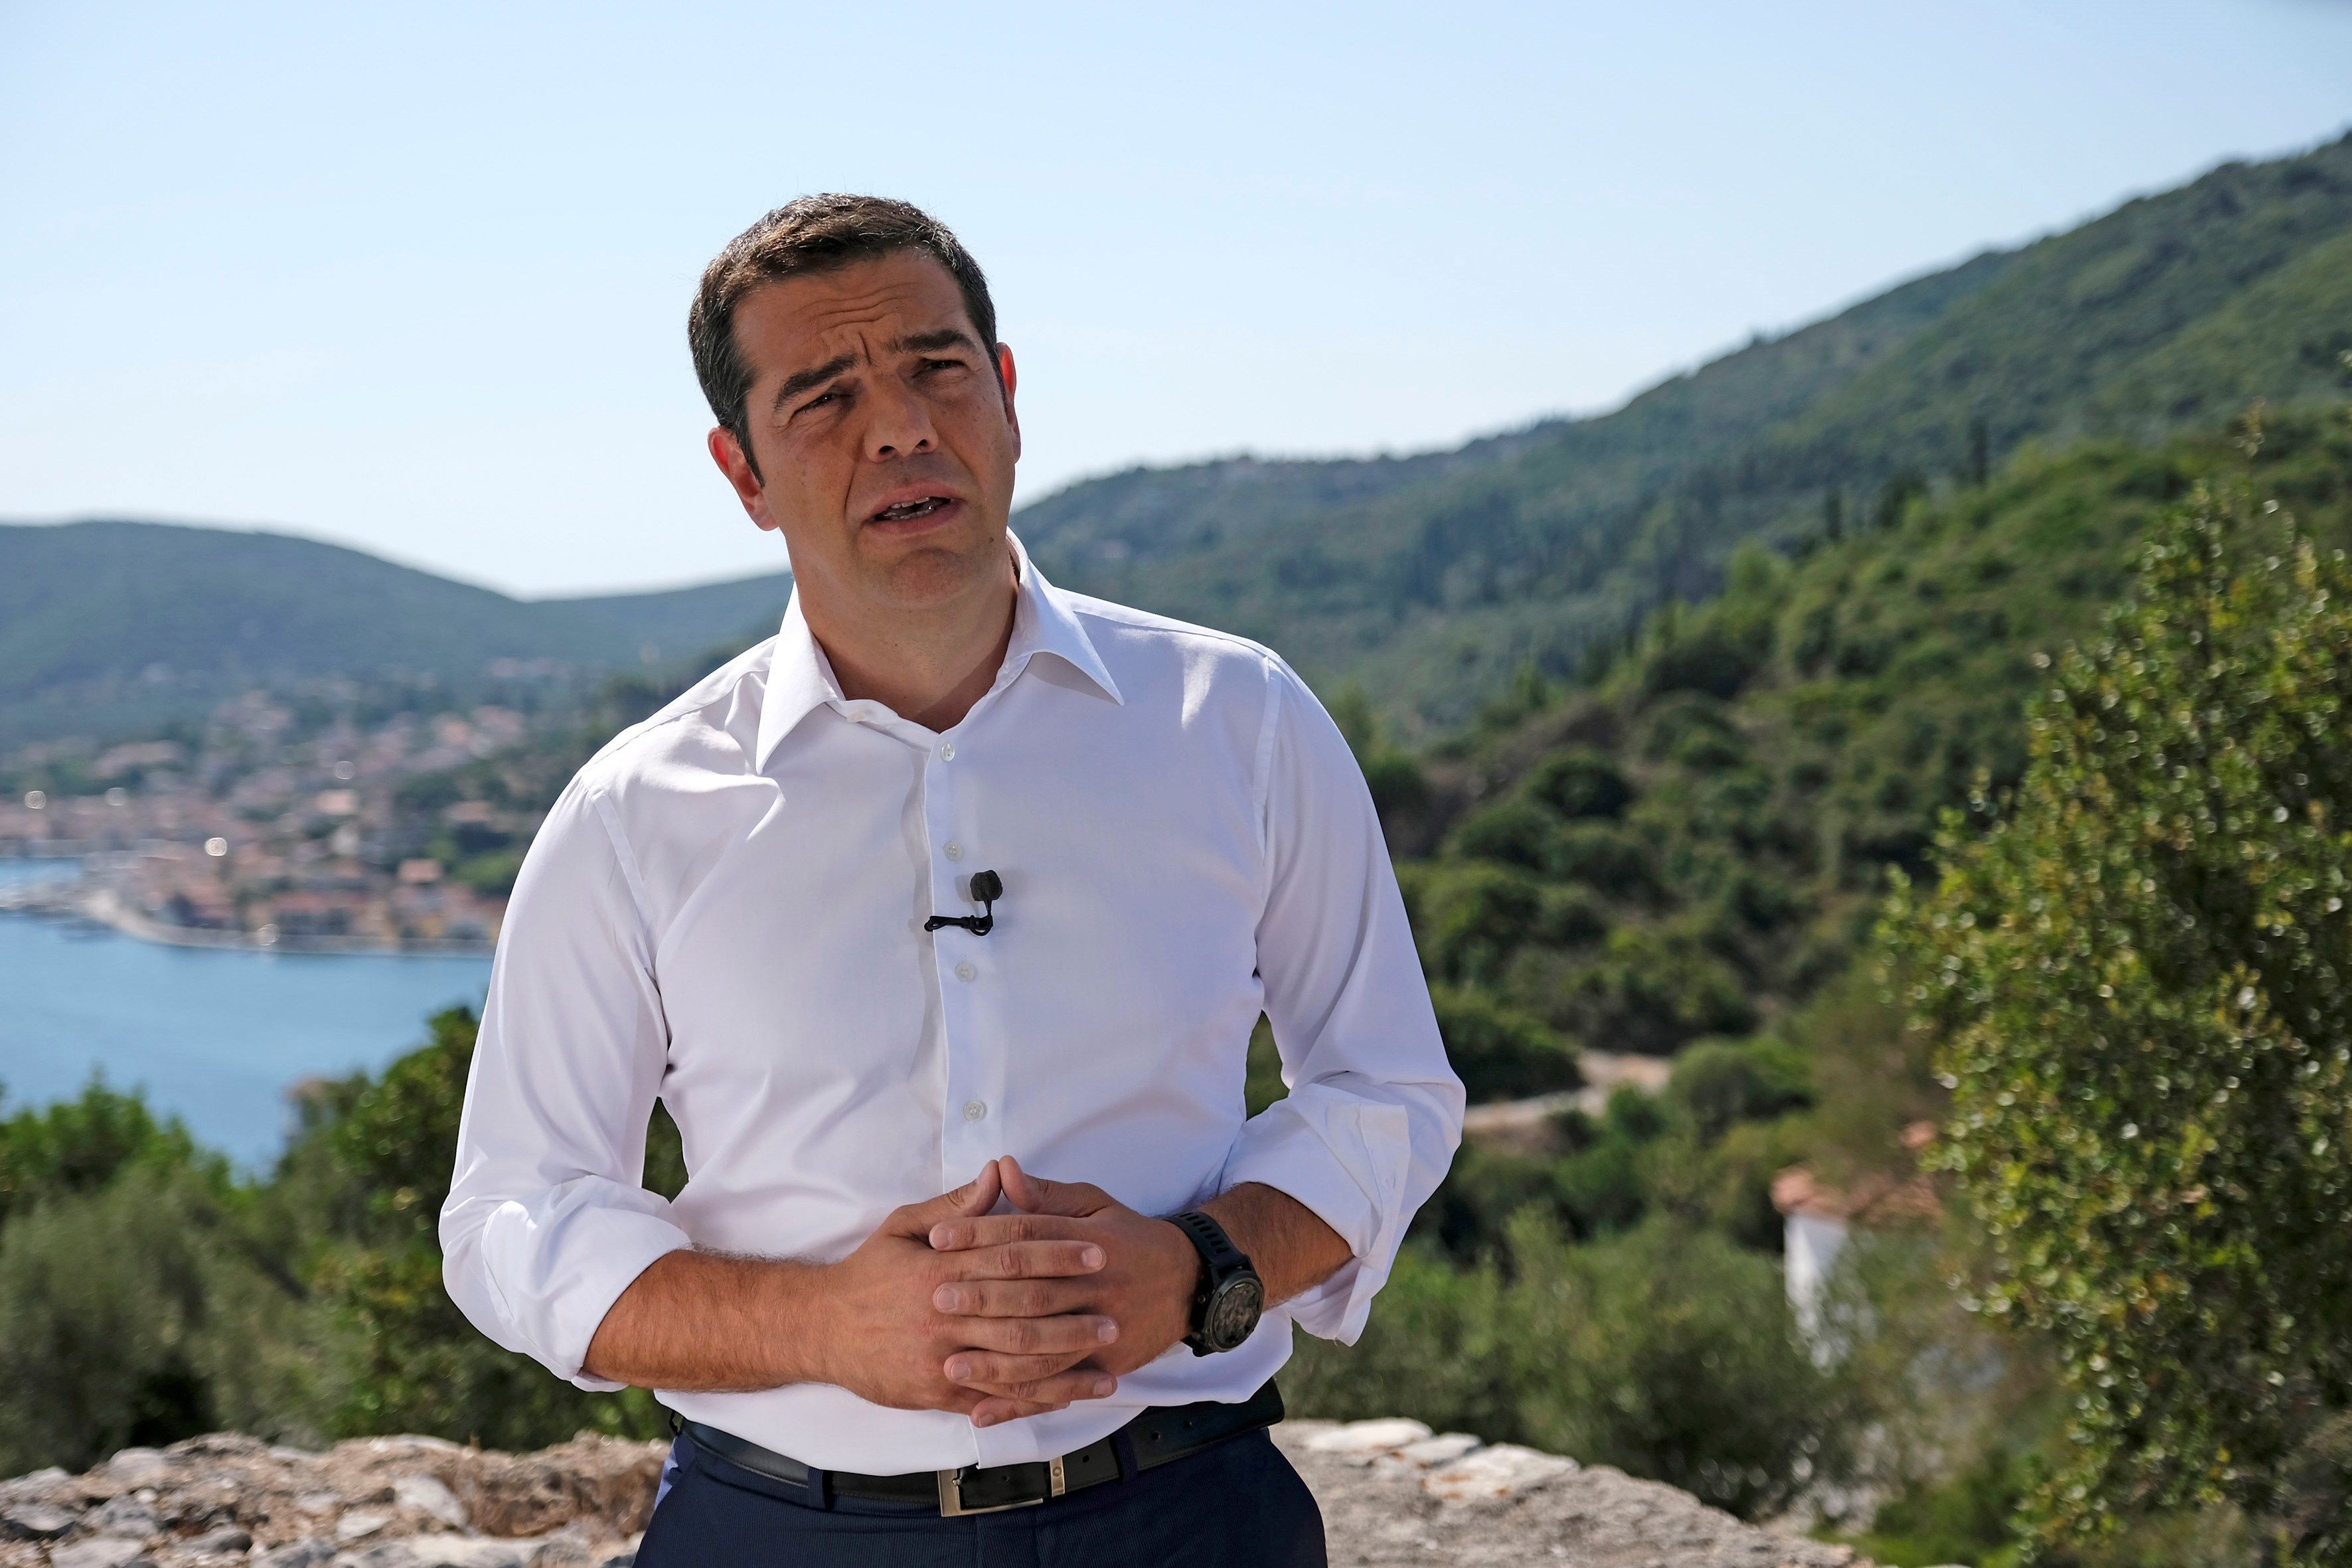 El primer ministro griego, Alexis Tsipras, realiza una declaración desde la Isla de Ítaca hoy, 21 de agosto de 2018. Tsipras celebró desde la mitológica isla de Ítaca, patria de Ulíses, el comienzo de un "nuevo día" para Grecia tras vivir una variante mod